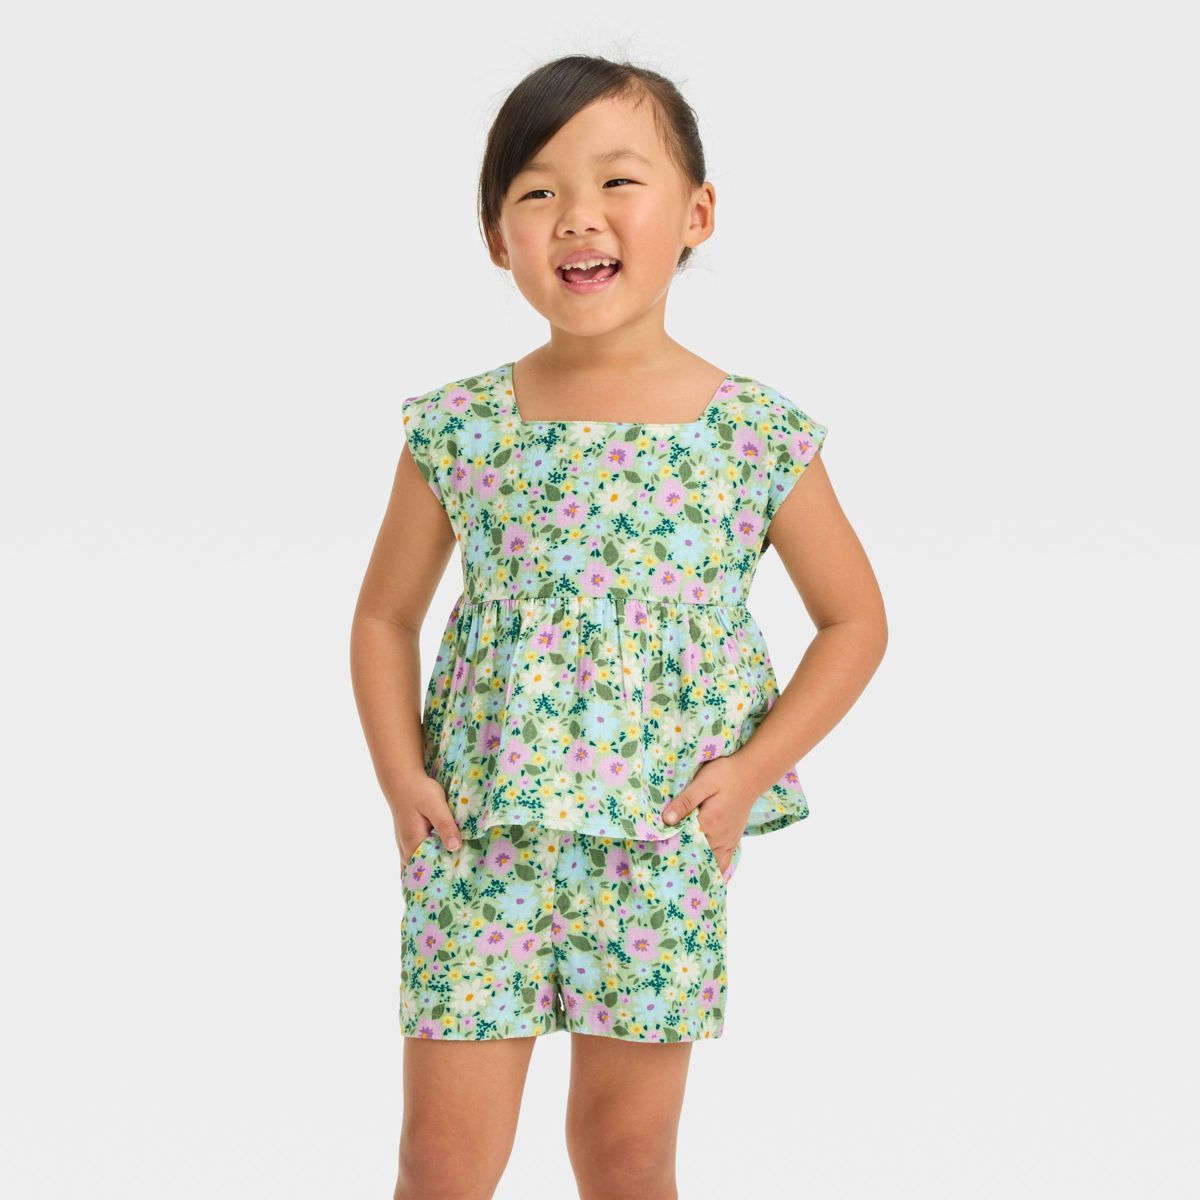 Toddler Girls' Floral Top & Bottom Set - Cat & Jack™ Green | Target